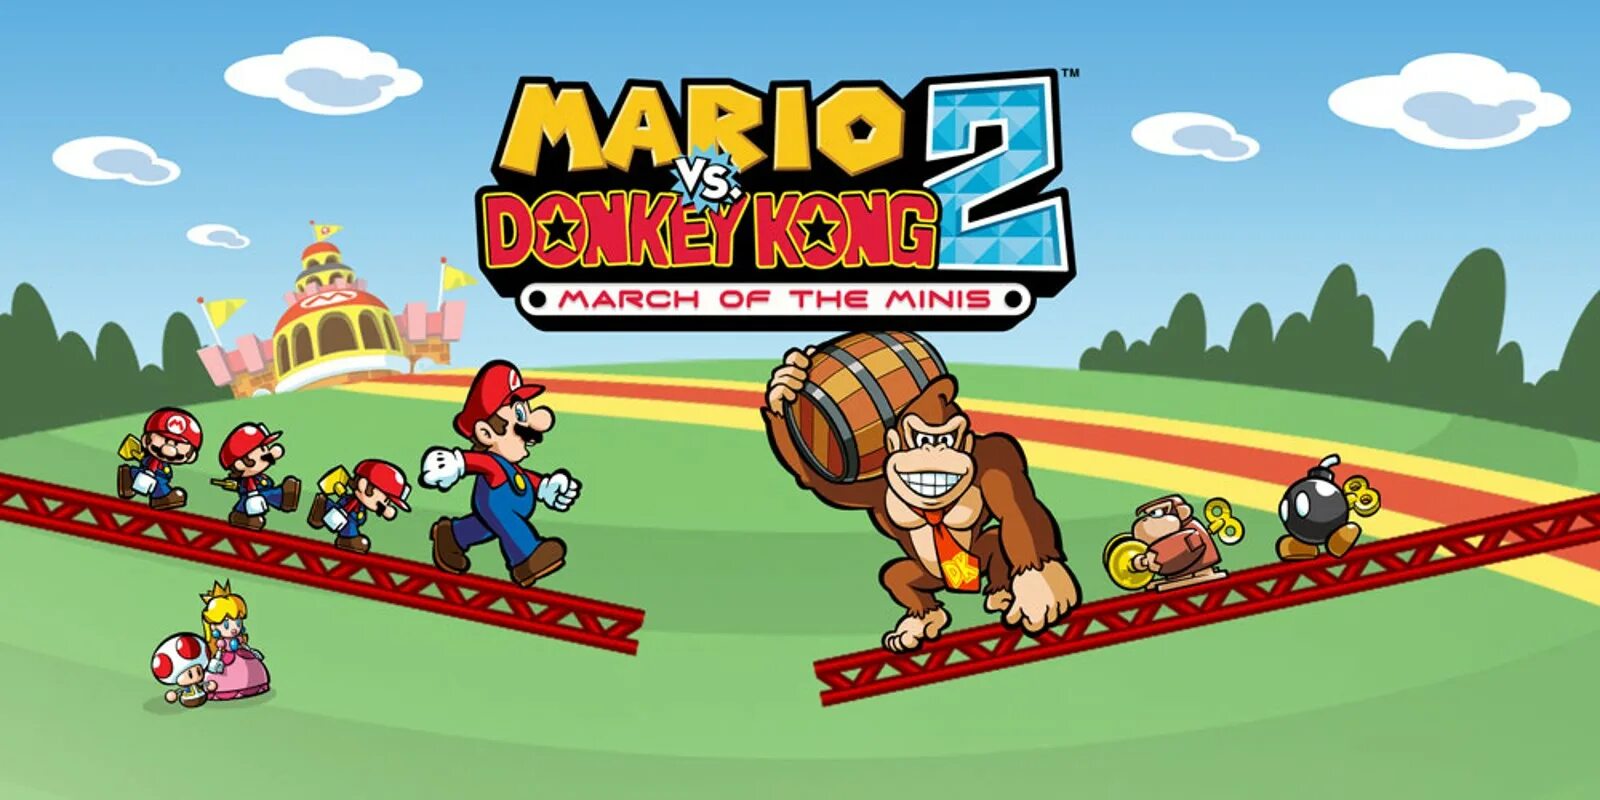 Mario vs donkey kong nintendo switch. Mario vs. Donkey Kong 2: March of the Minis. Mini Mario Mario vs Donkey Kong. Mario vs. Donkey Kong 2 game. Donkey Kong Марио.